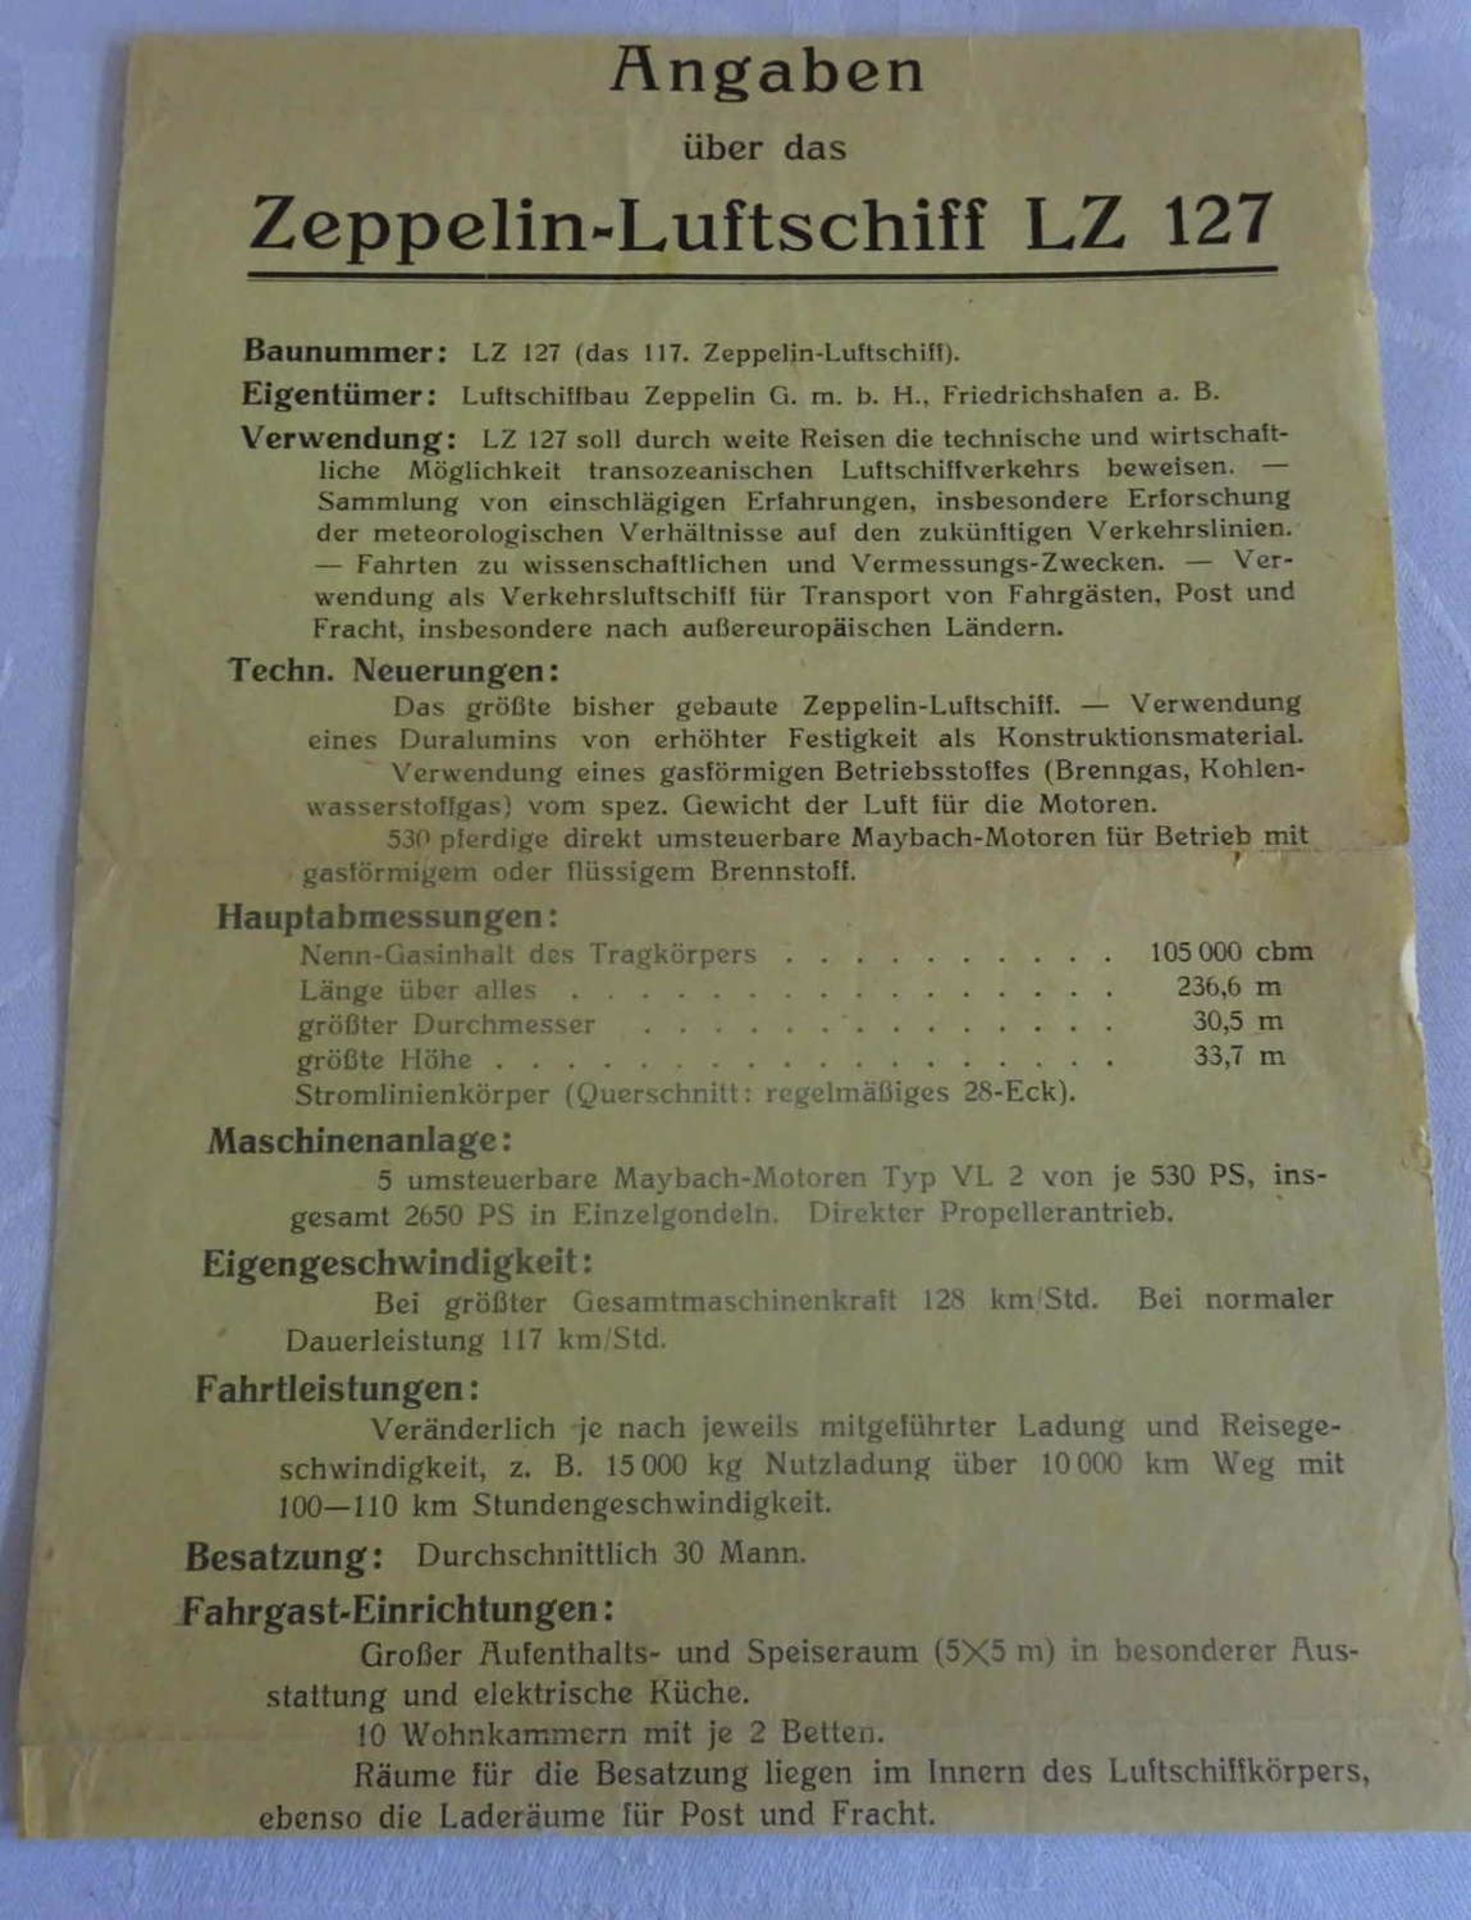 Angaben über das Zeppelin Luftschiff LZ 127Information about the Zeppelin airship LZ 127